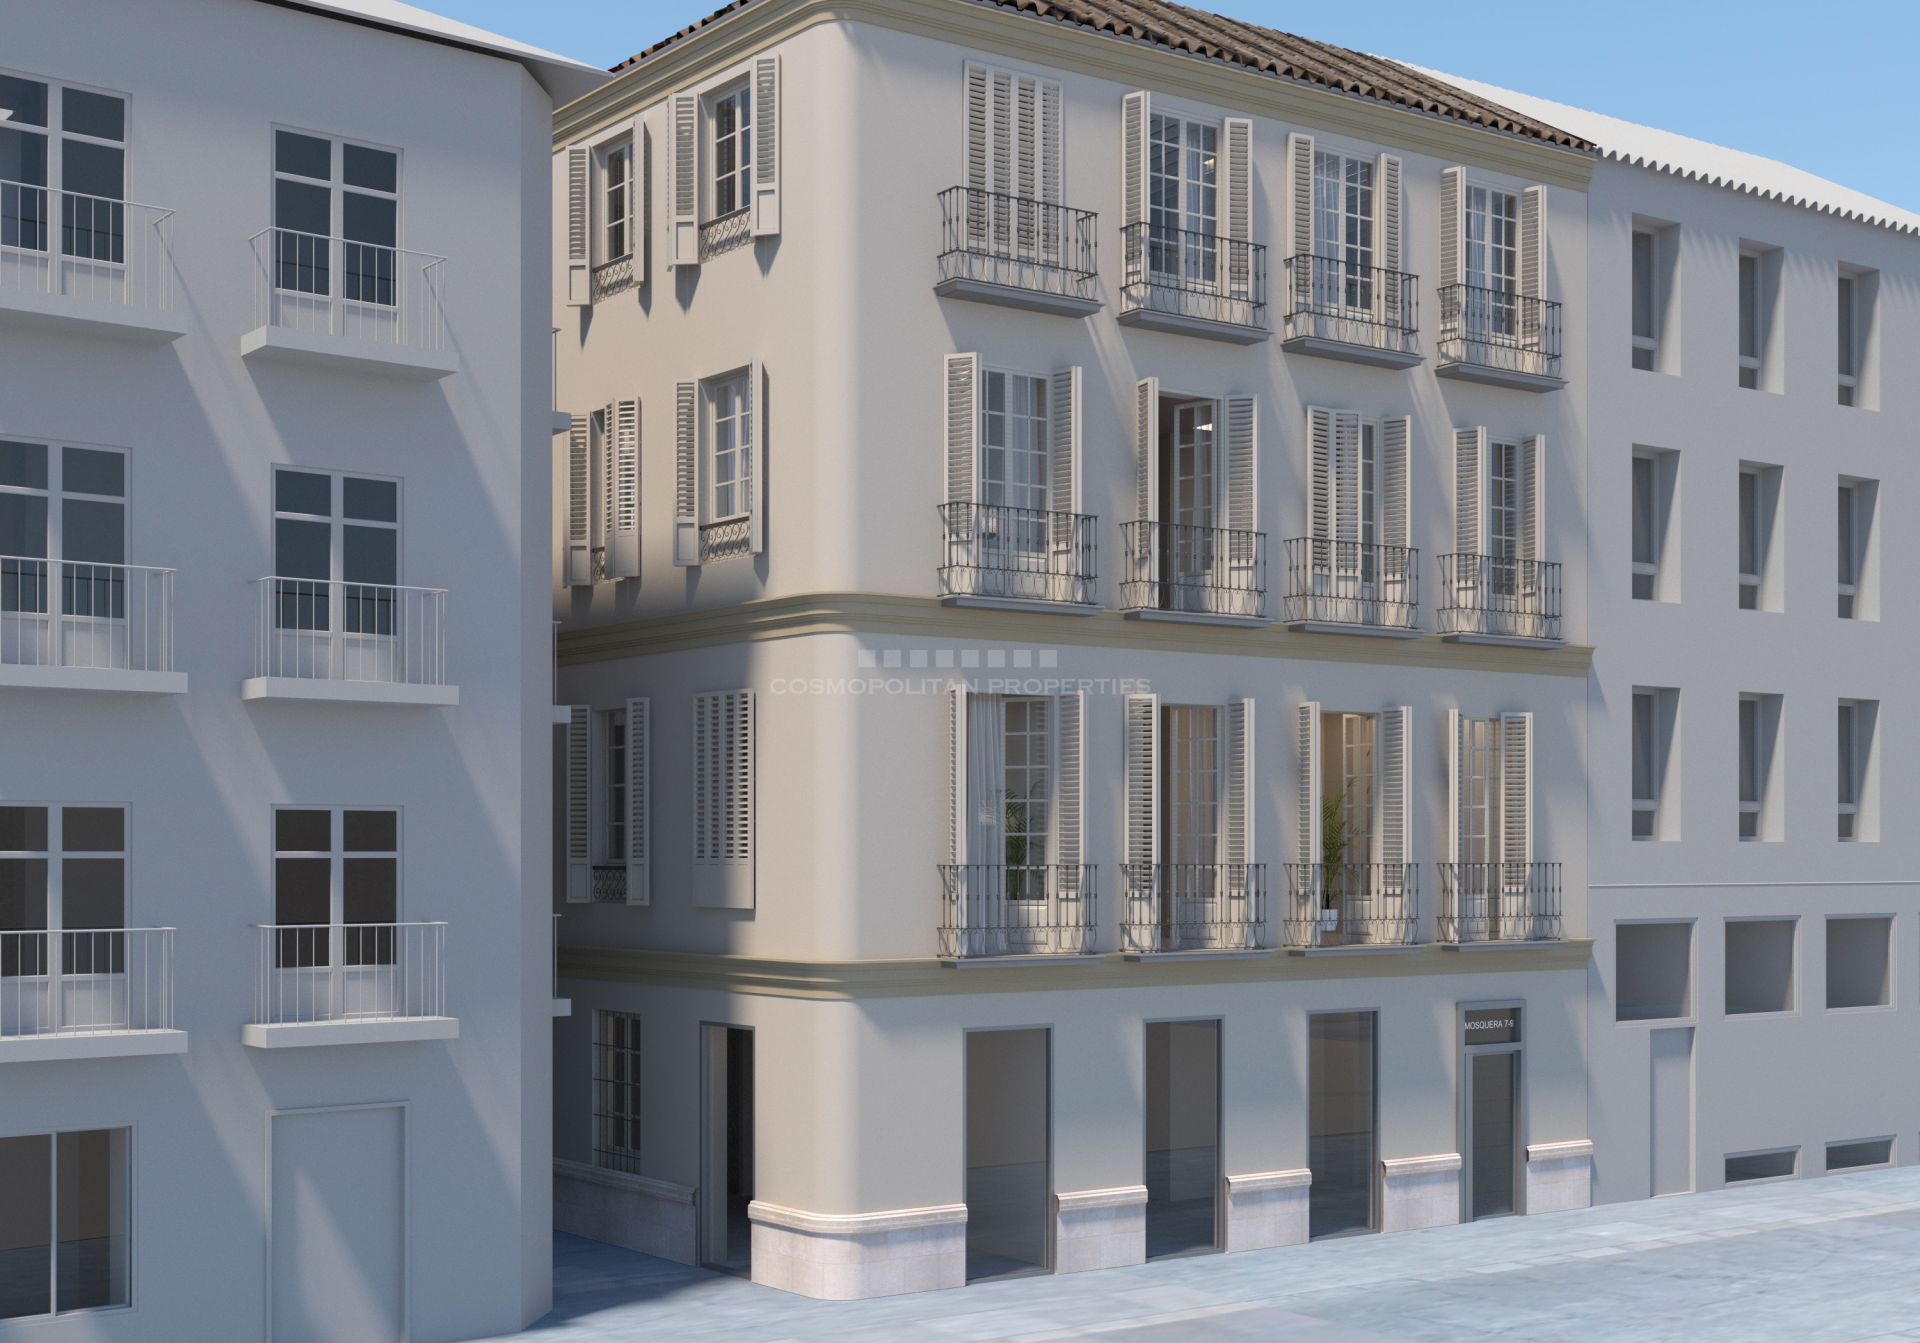 Estudios, apartamentos de uno y dos dormitorios, situados en el pleno centro histórico de Málaga